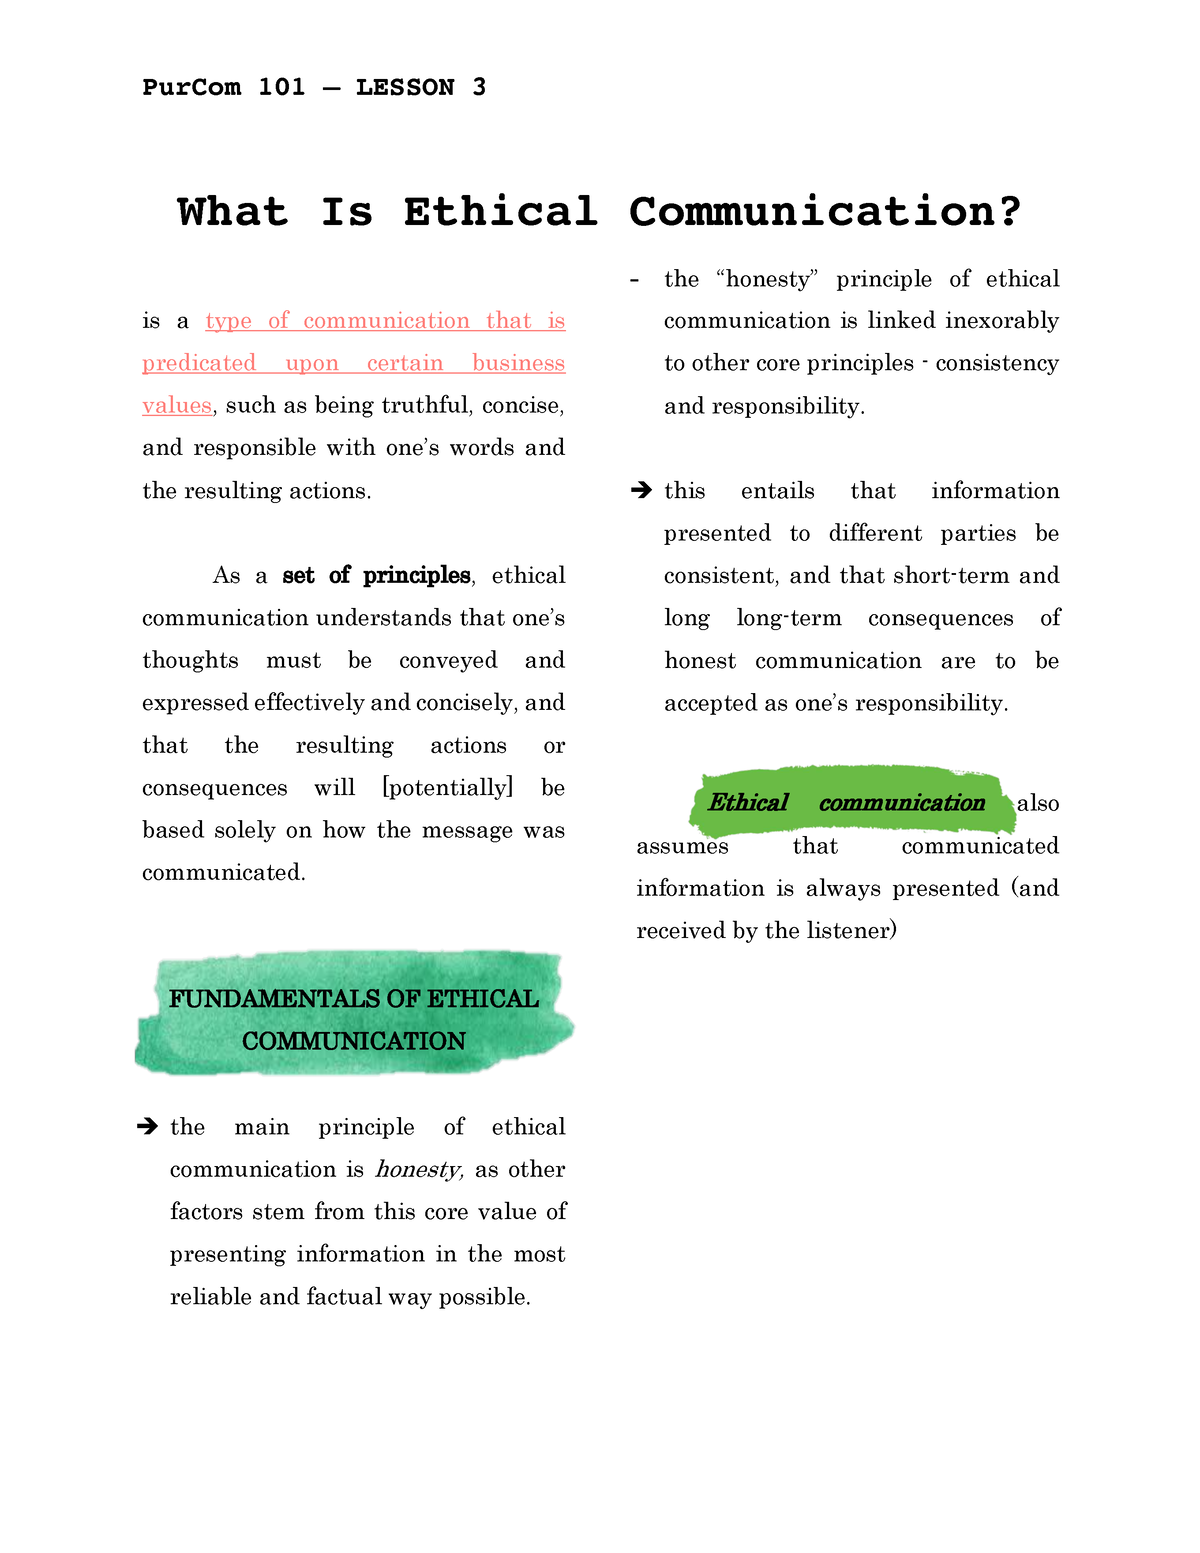 ethical communication case study